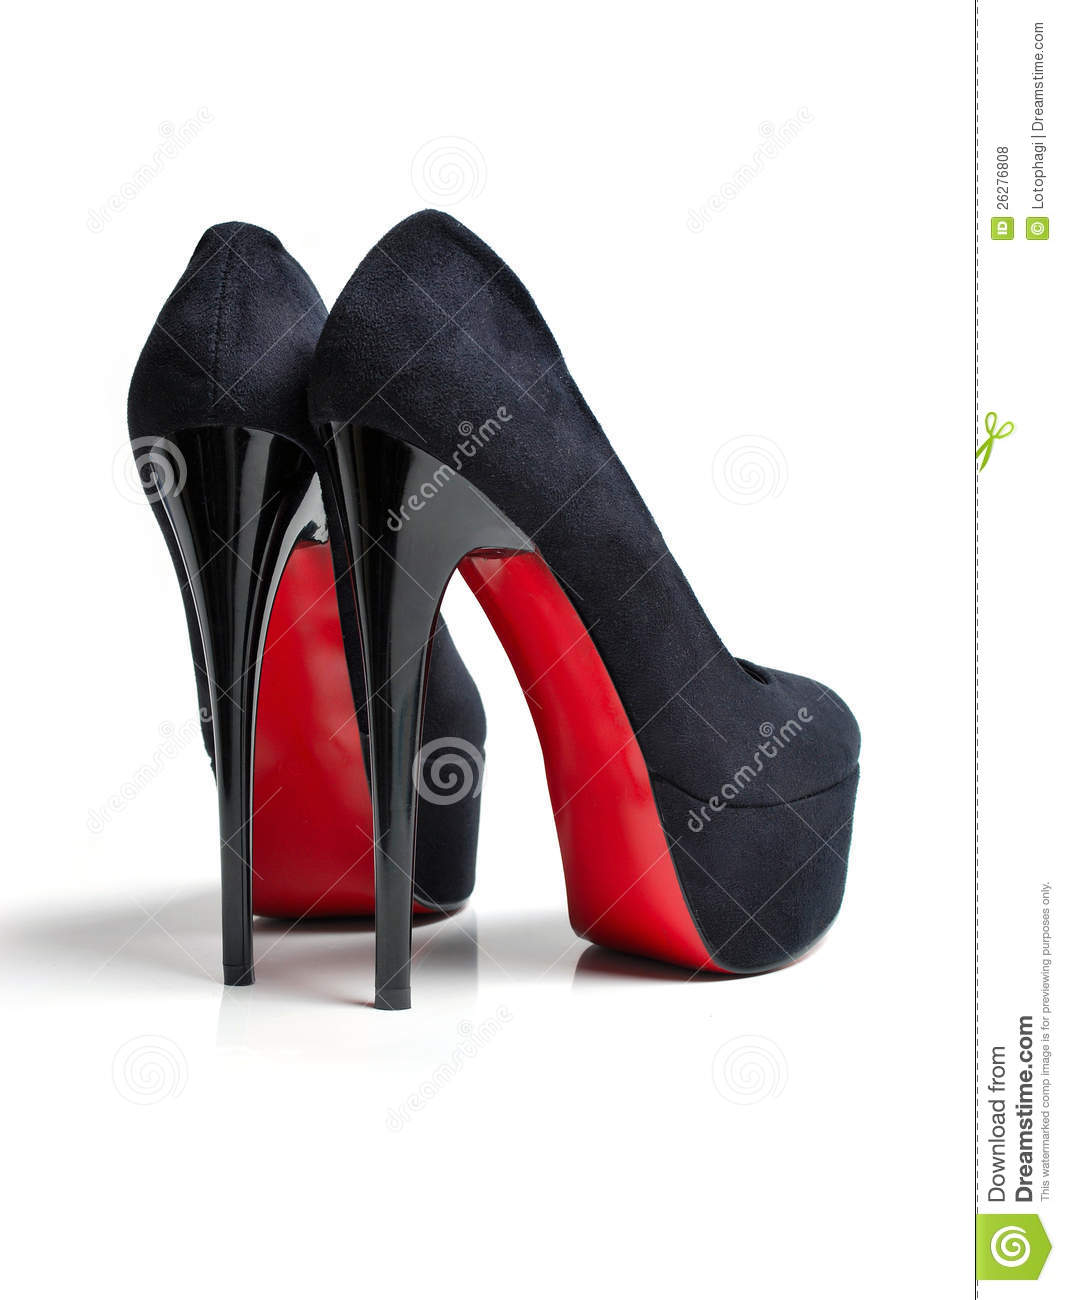 Туфли с черной подошвой. Christian louboutin каблуки 15 см. Туфли на высоком каблуке с красной подошвой. Туфли на каблуке с красной подошвой. Туфли на шпильке с красной подошвой.